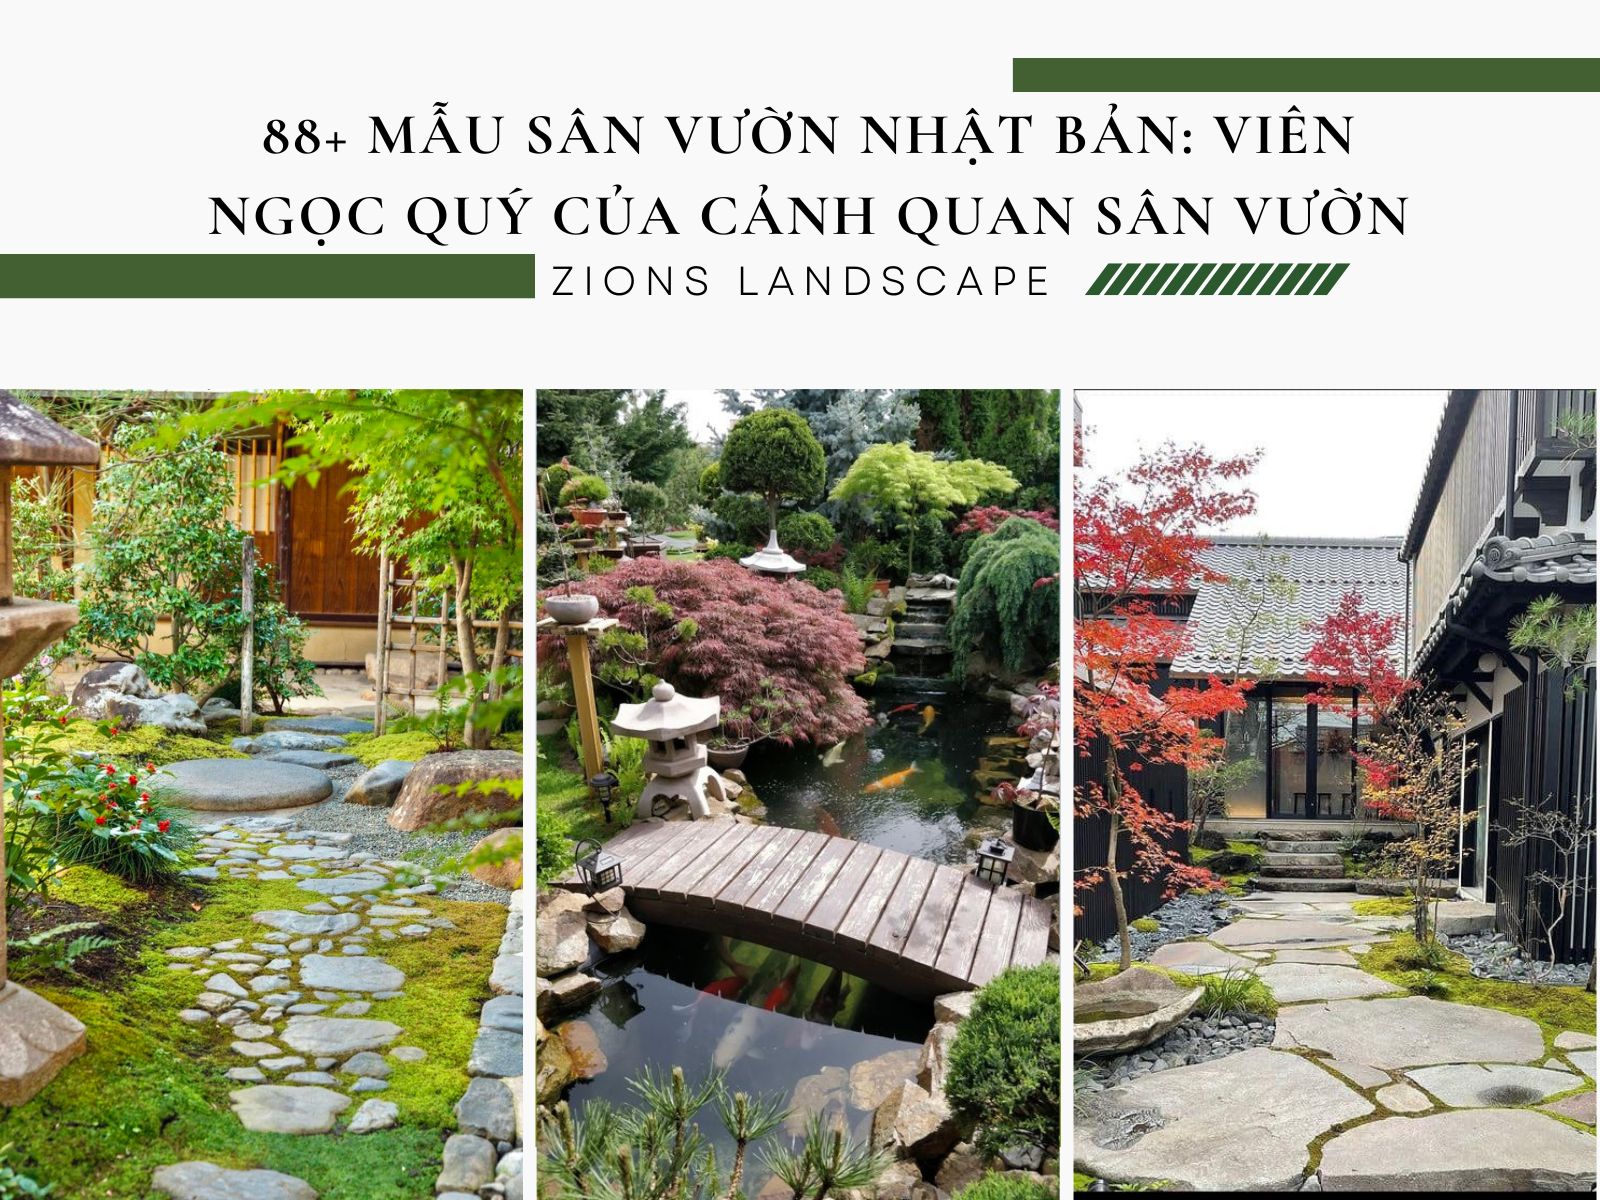 88 Mẫu Sân Vườn Nhật Bản: Viên Ngọc Quý Trong Ngành Cảnh Quan Sân Vườn